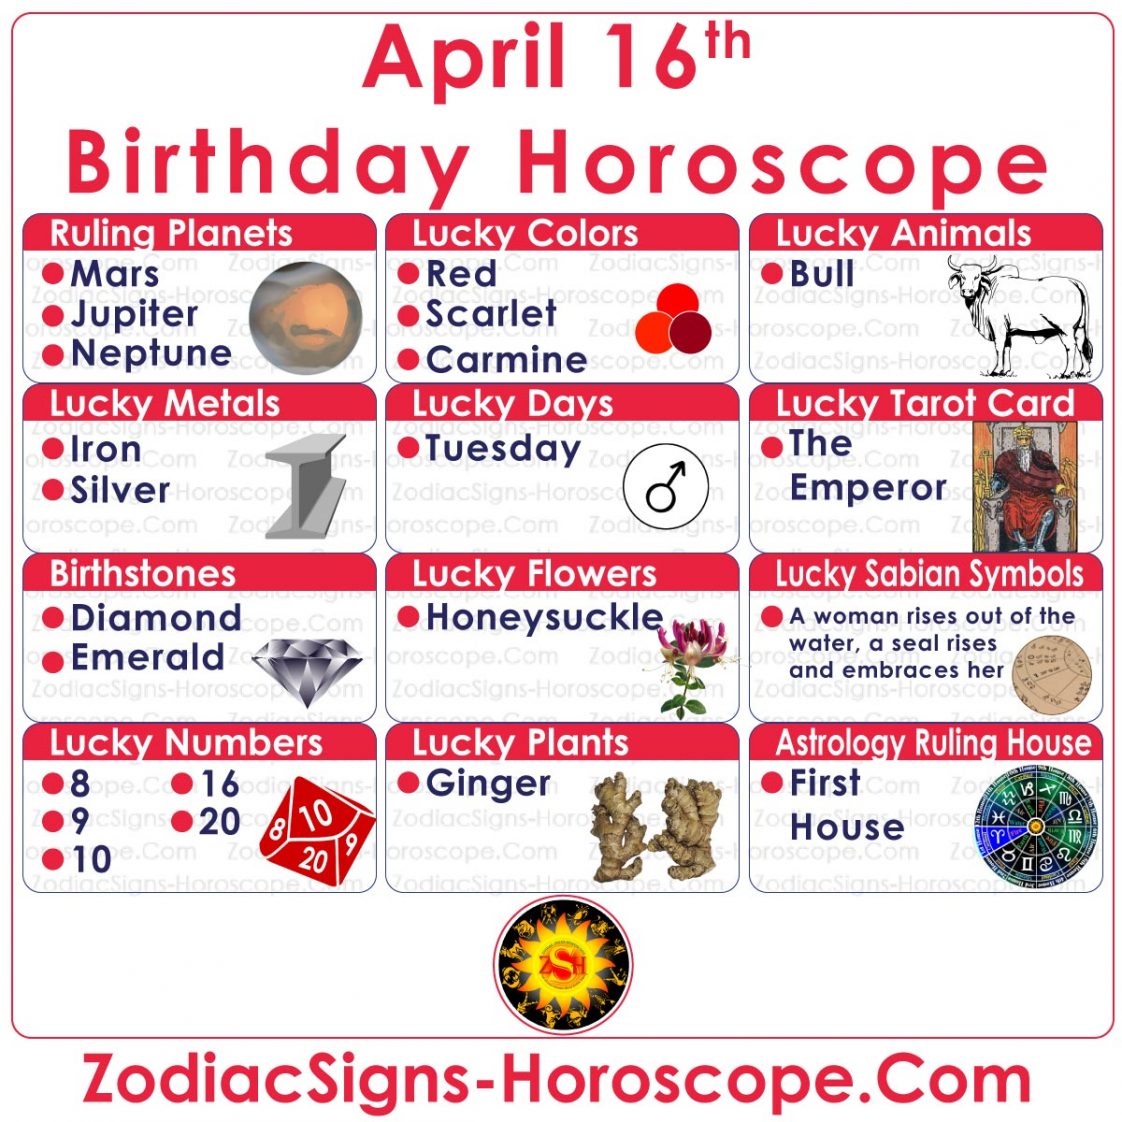 april 23 astrological sign